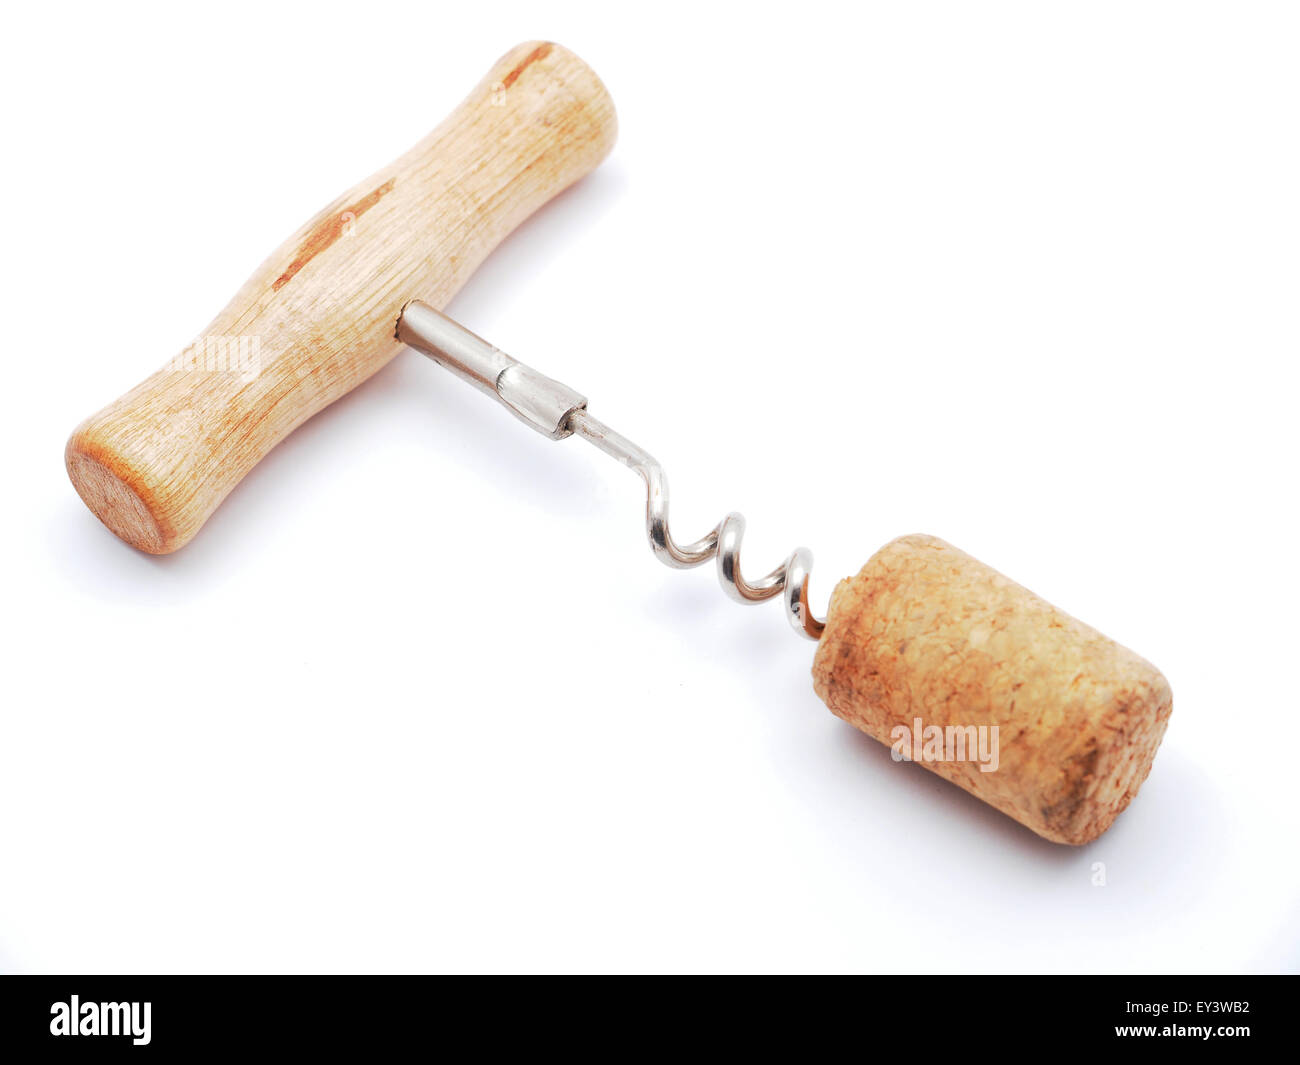 corkscrew on a white background Stock Photo